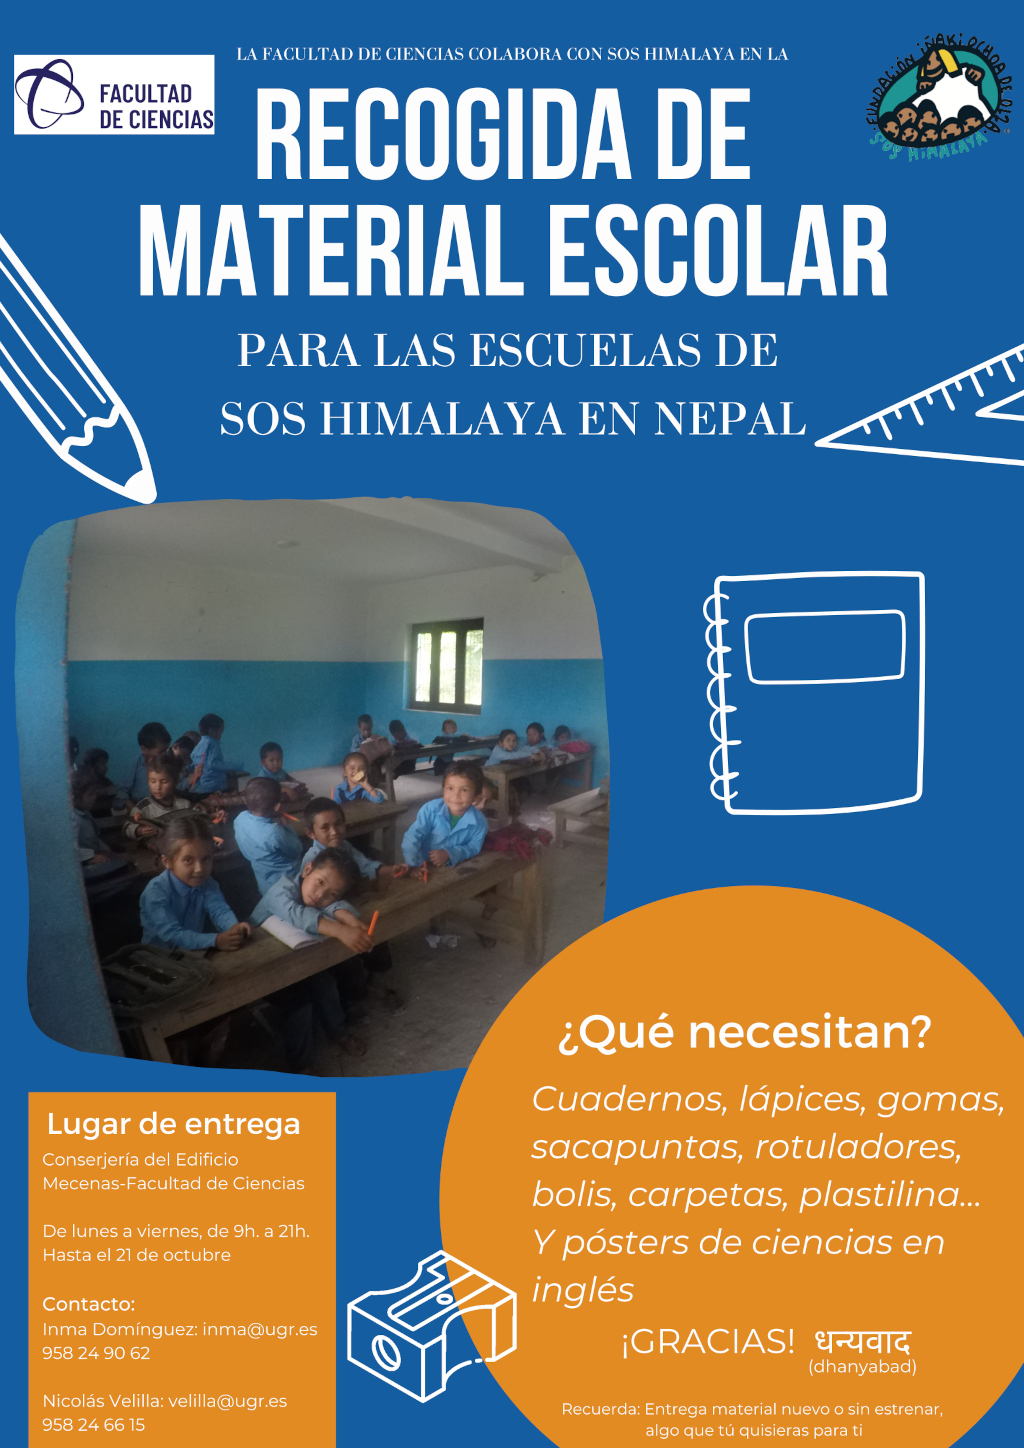 Recogida de material escolar para las escuelas de SOS Himalaya en Nepal